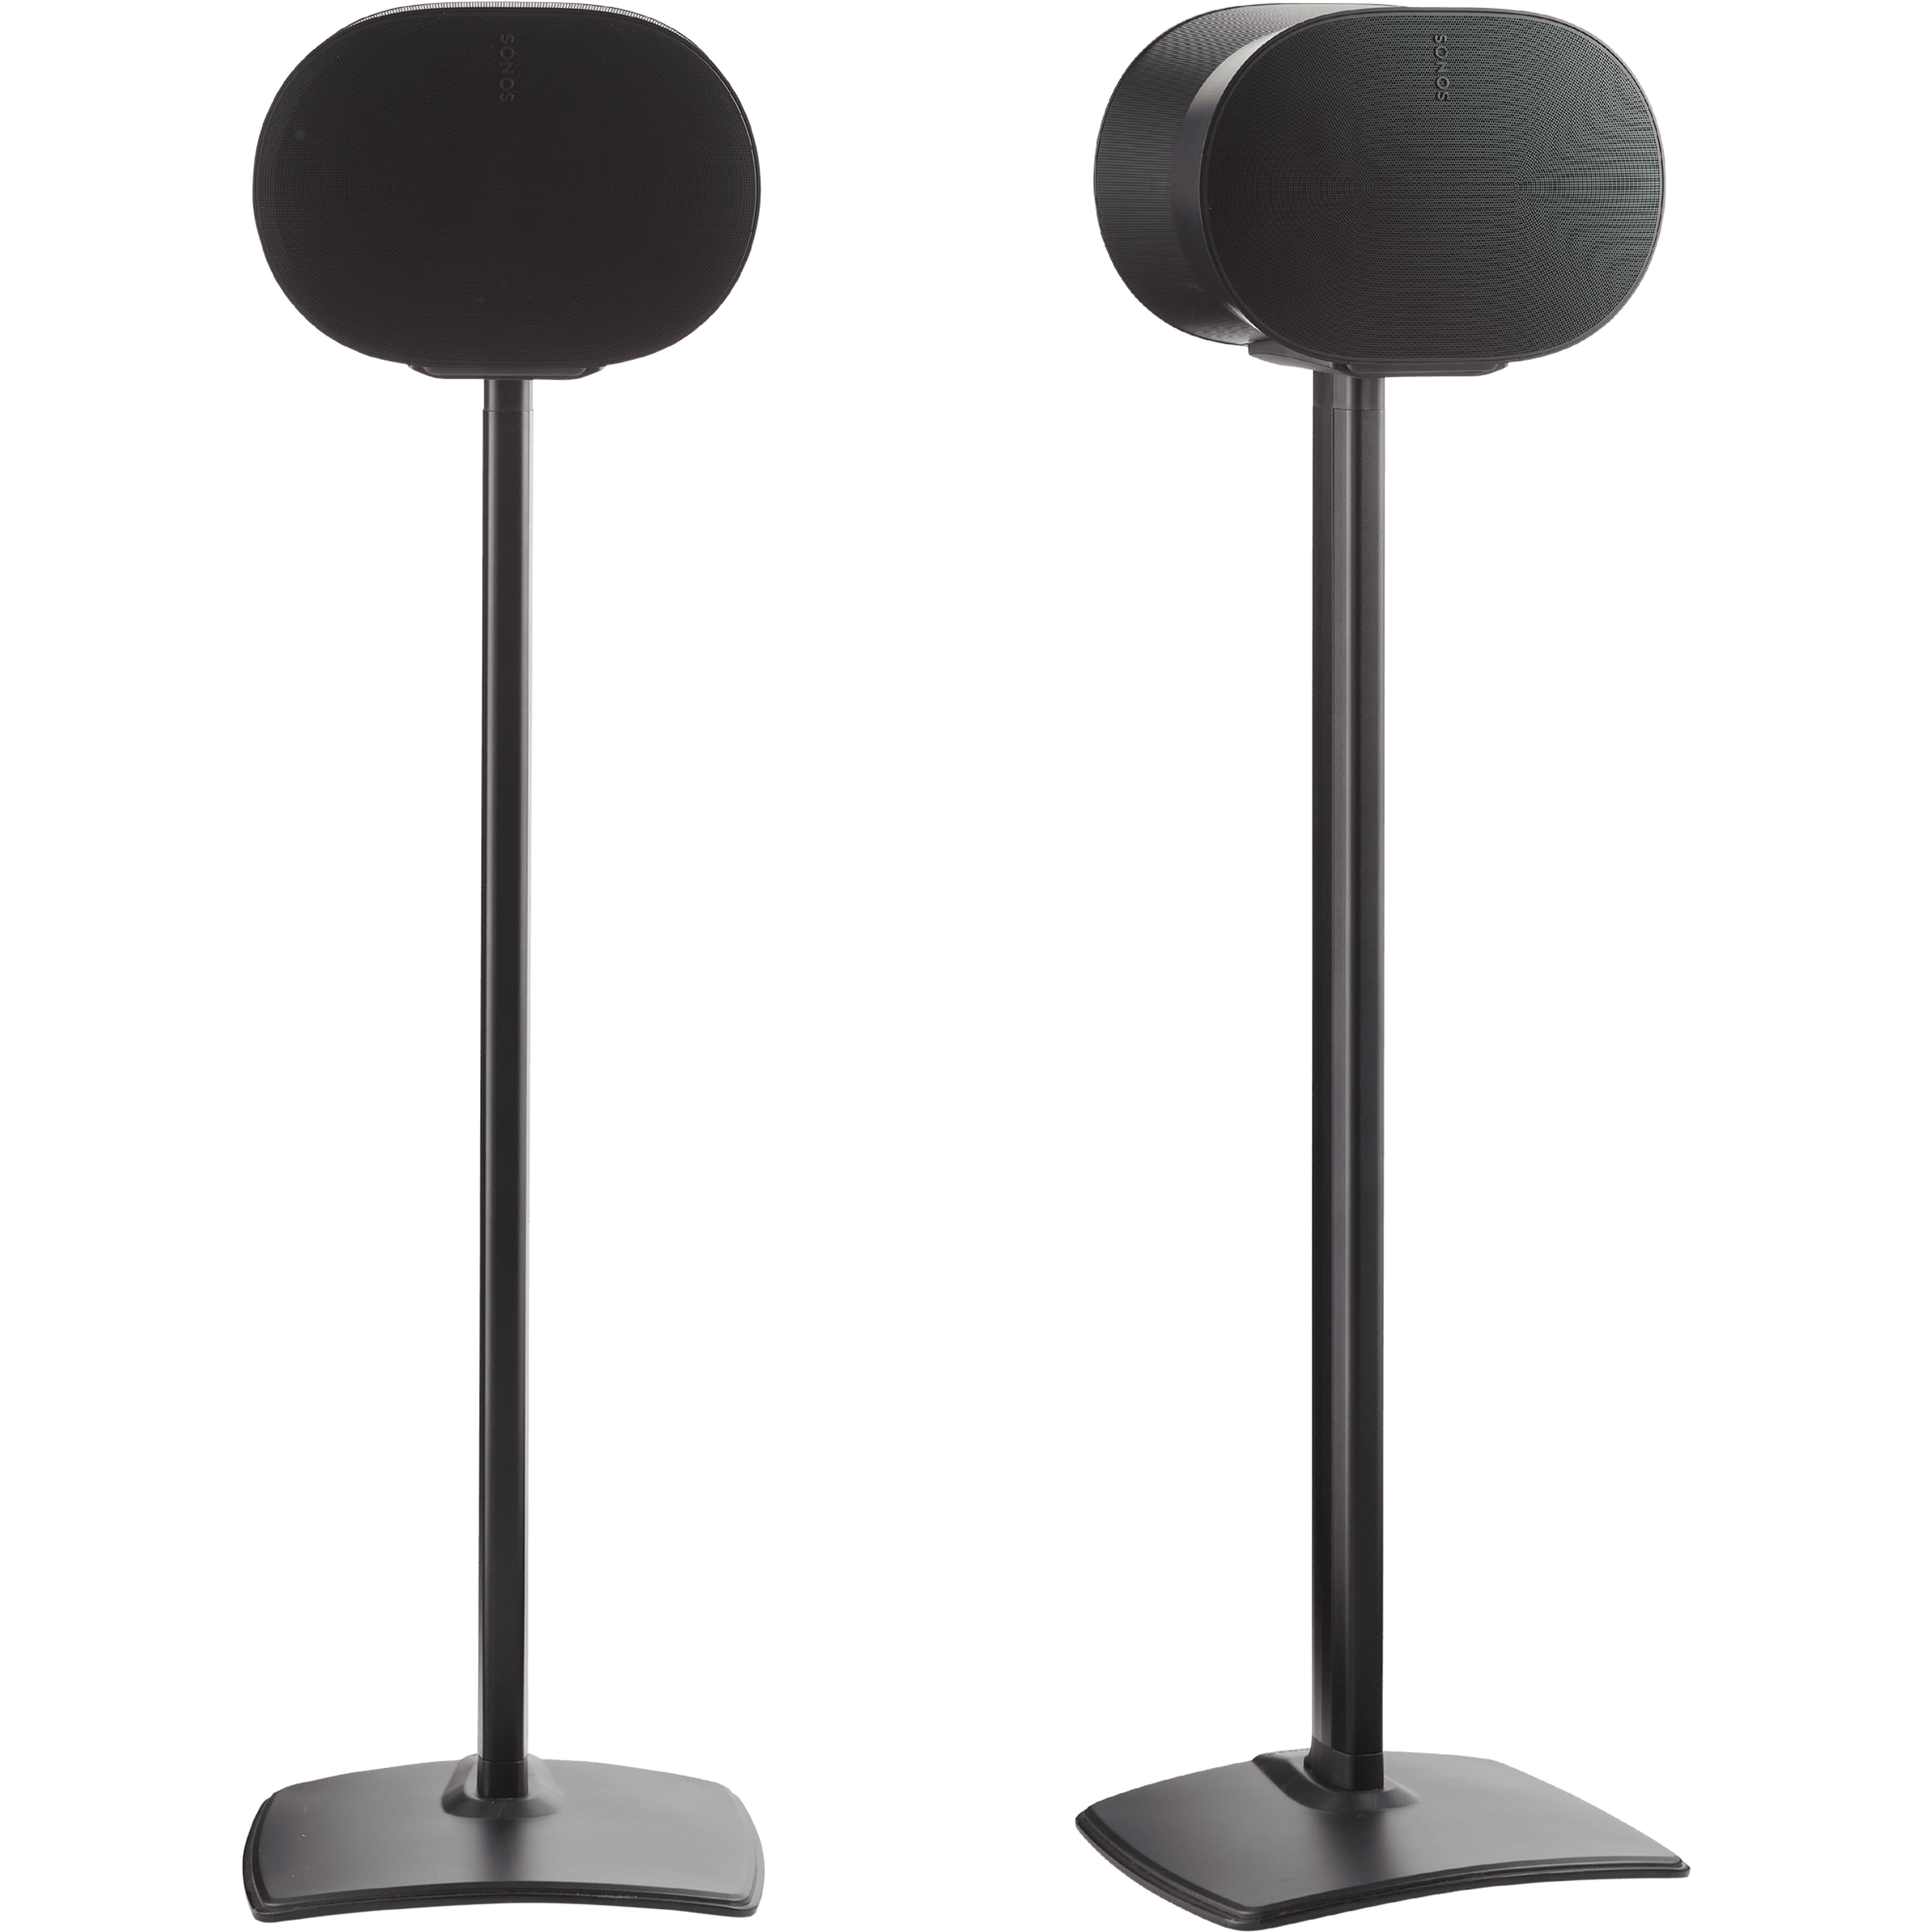 Bild mit zwei Sanus Standfüßen in Schwarz mit Sonos Era 300 in Schwarz